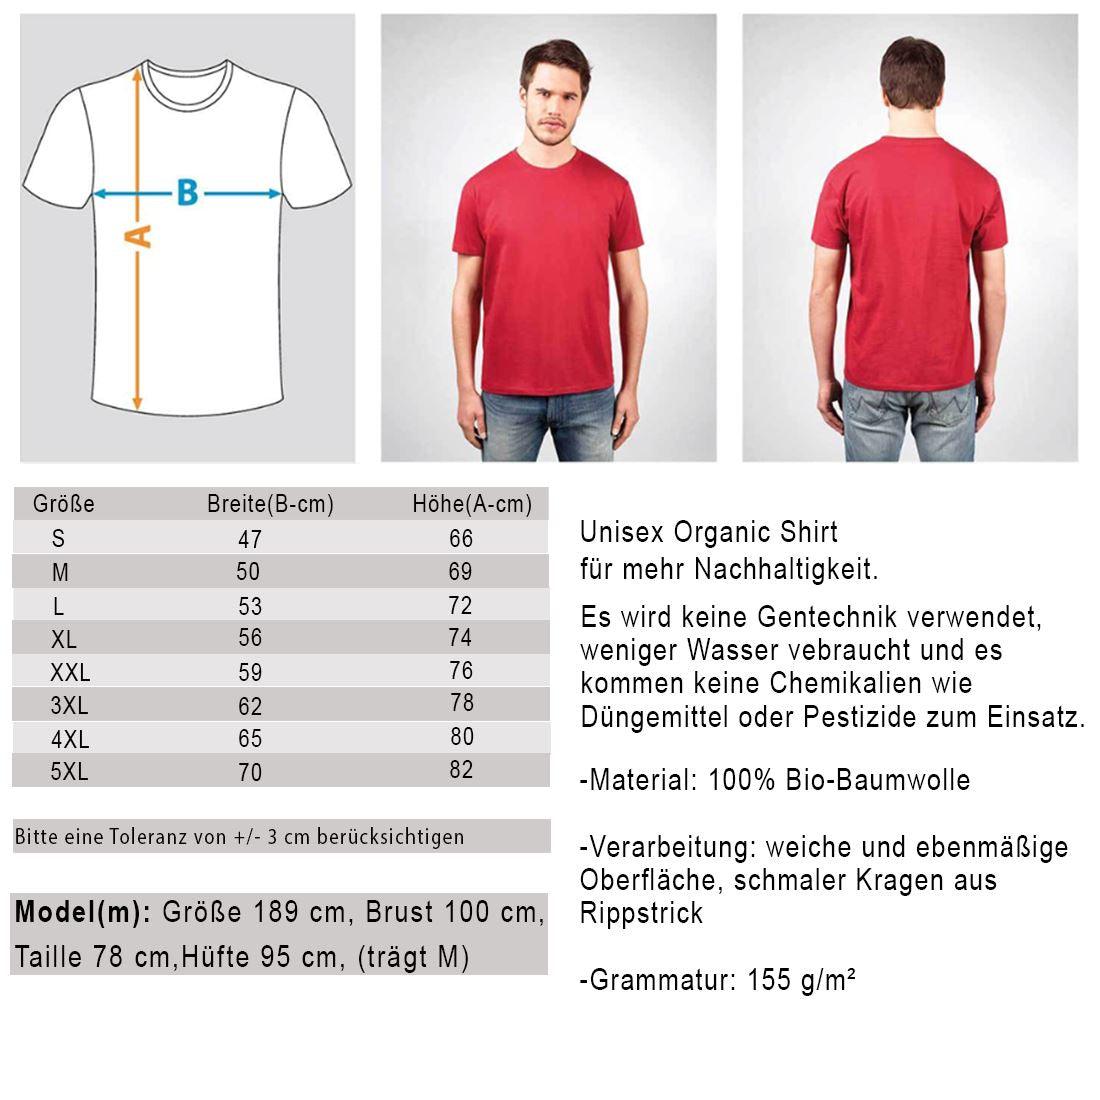 Save the planet - Unisex Organic Shirt Rocker T-Shirt ST/ST Shirtee 